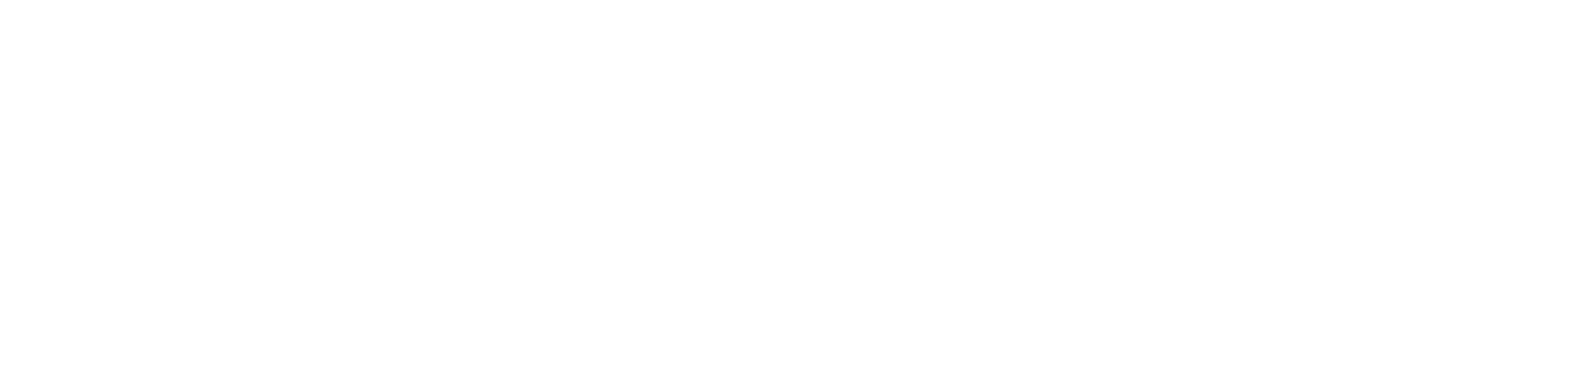 Yageo logo grand pour les fonds sombres (PNG transparent)